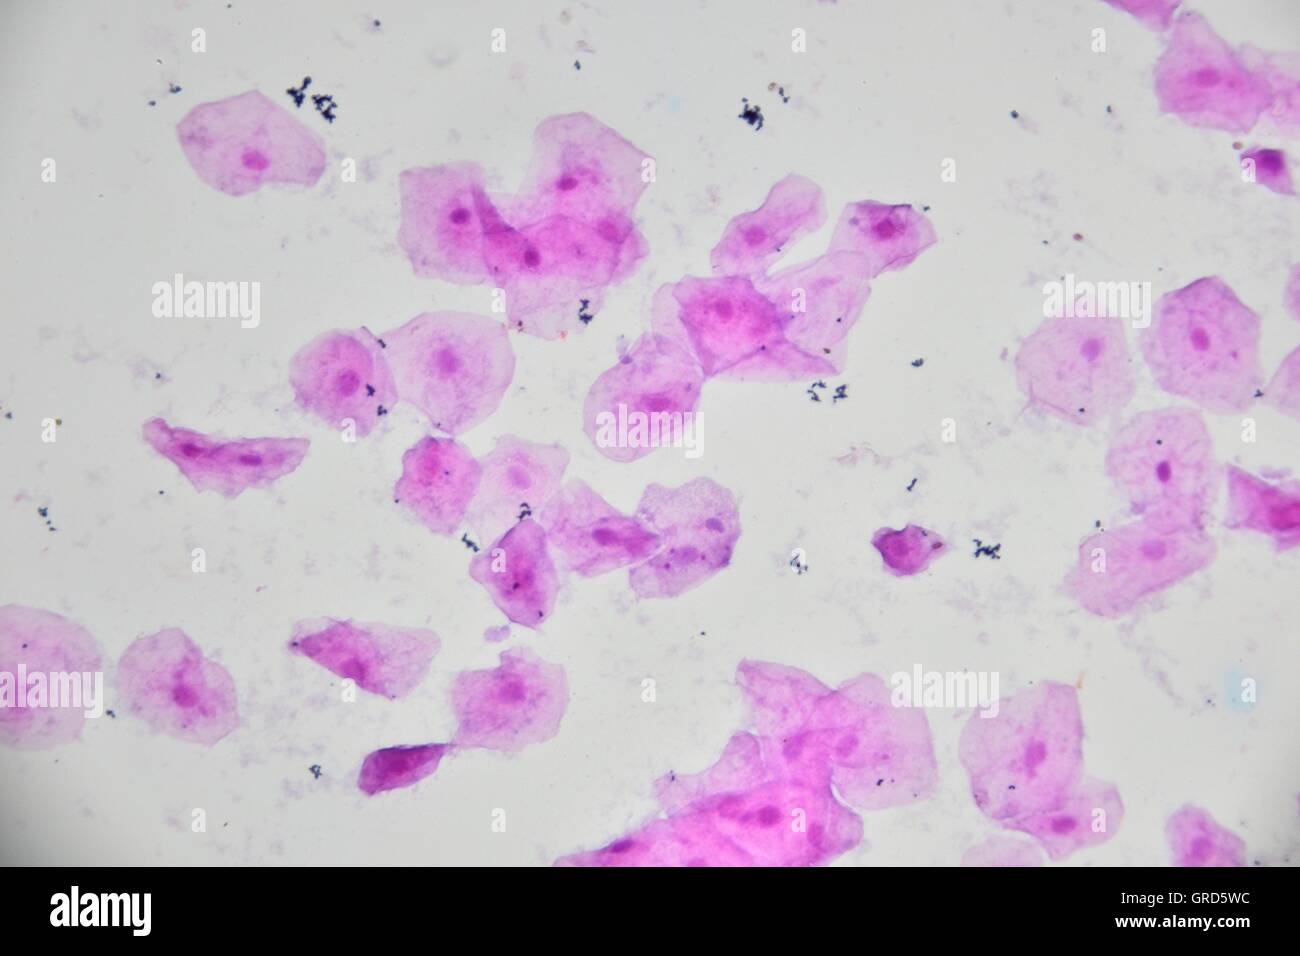 Immagine microscopica di cellule umane di mucosa orale con batteri. Ingrandimento di 400x. Foto Stock